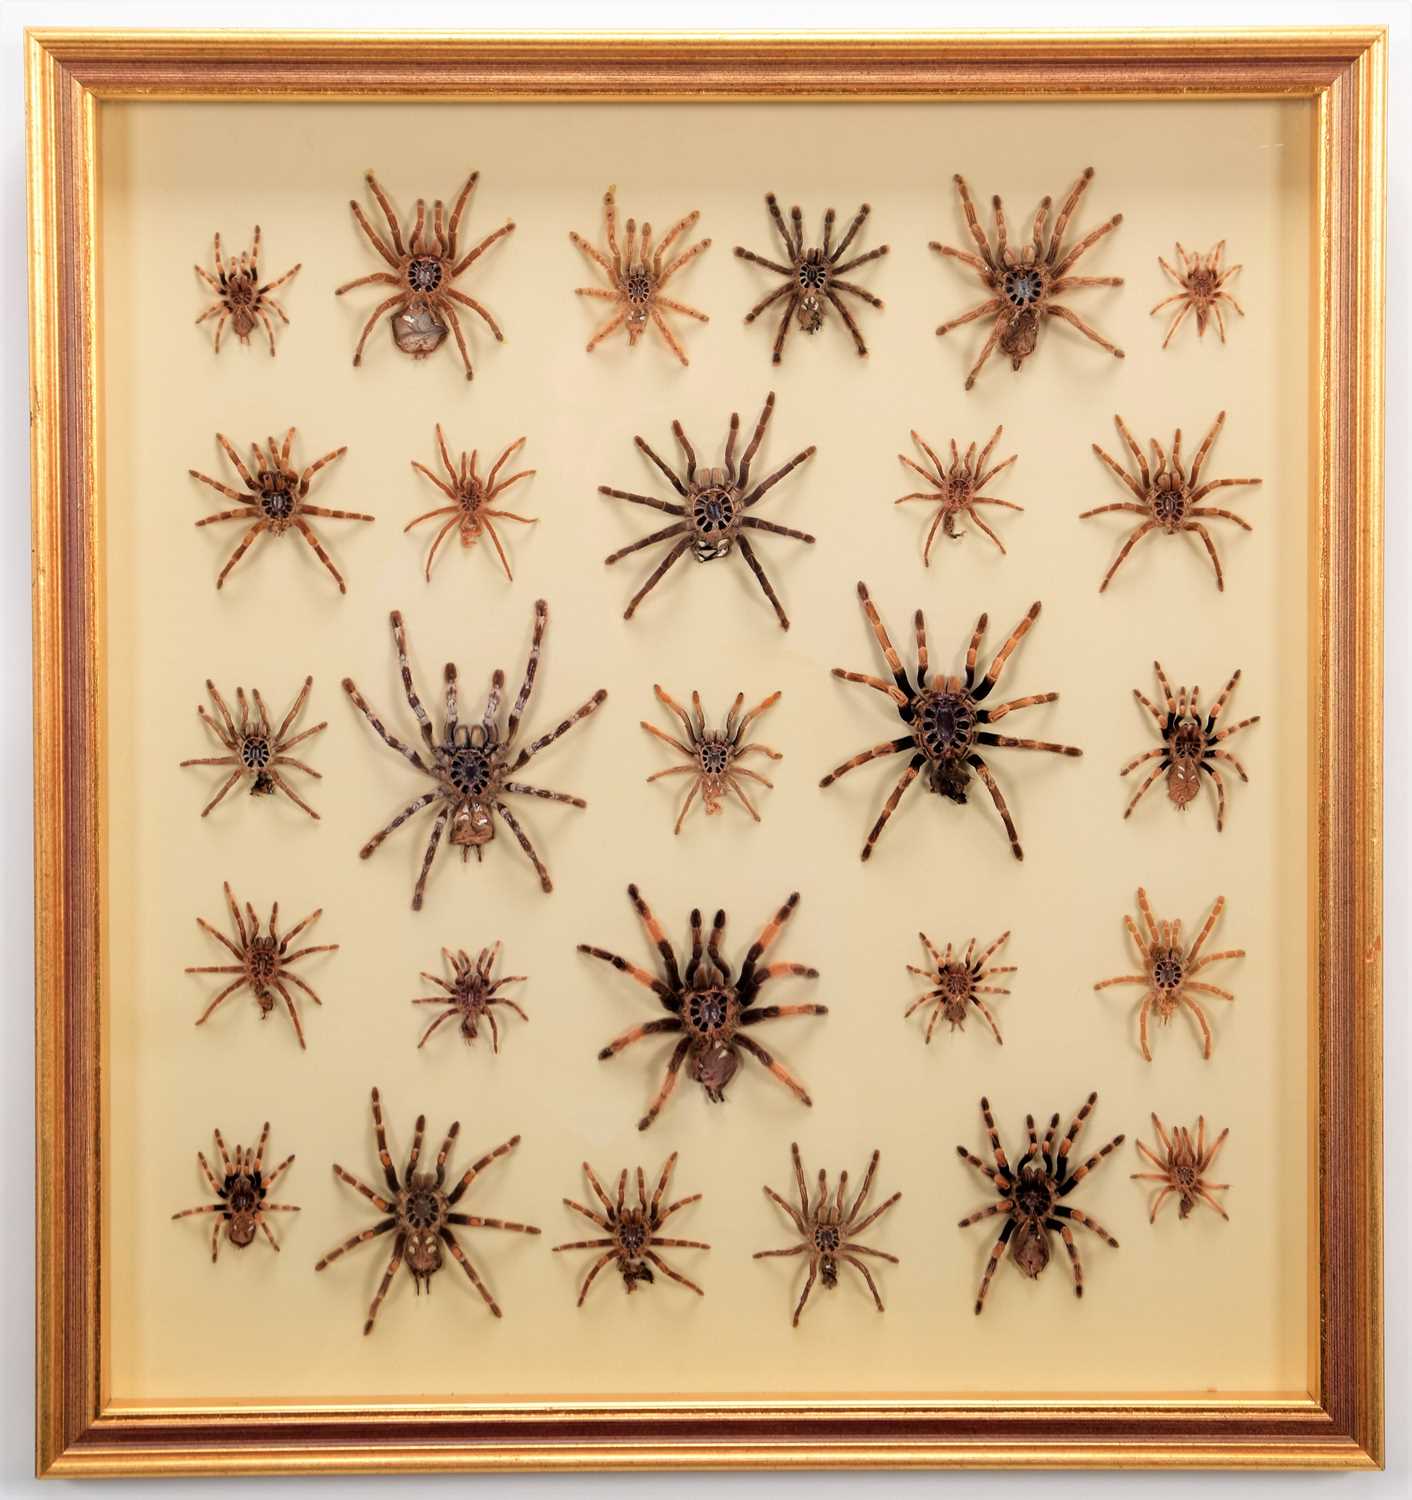 Lot 115 - Natural History: A Framed Display of Tarantula...